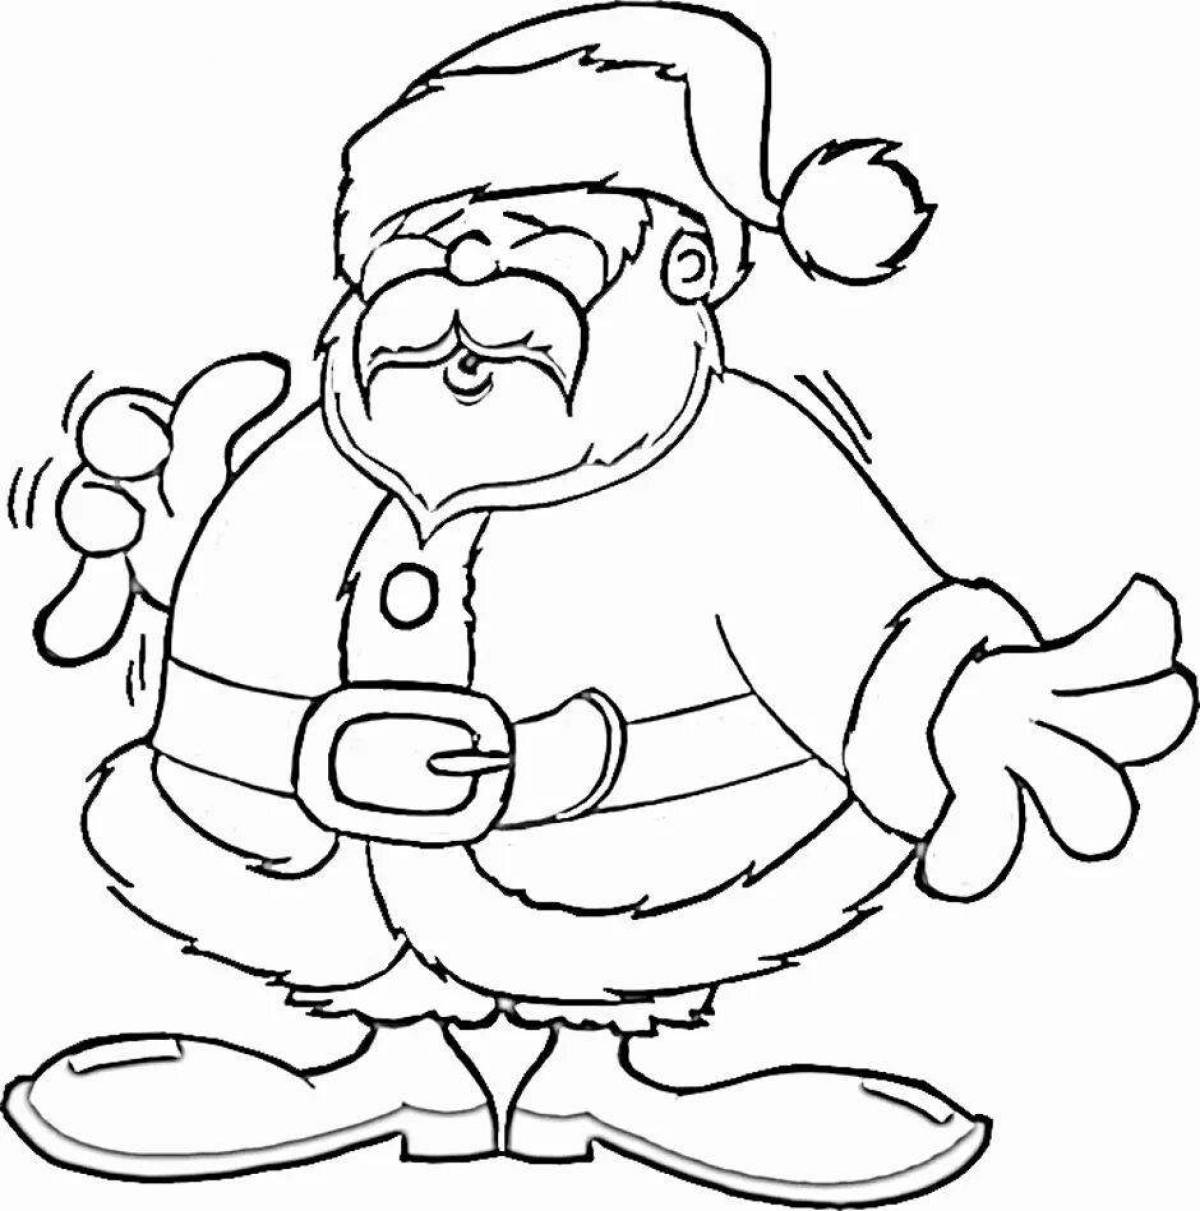 Santa holiday coloring book